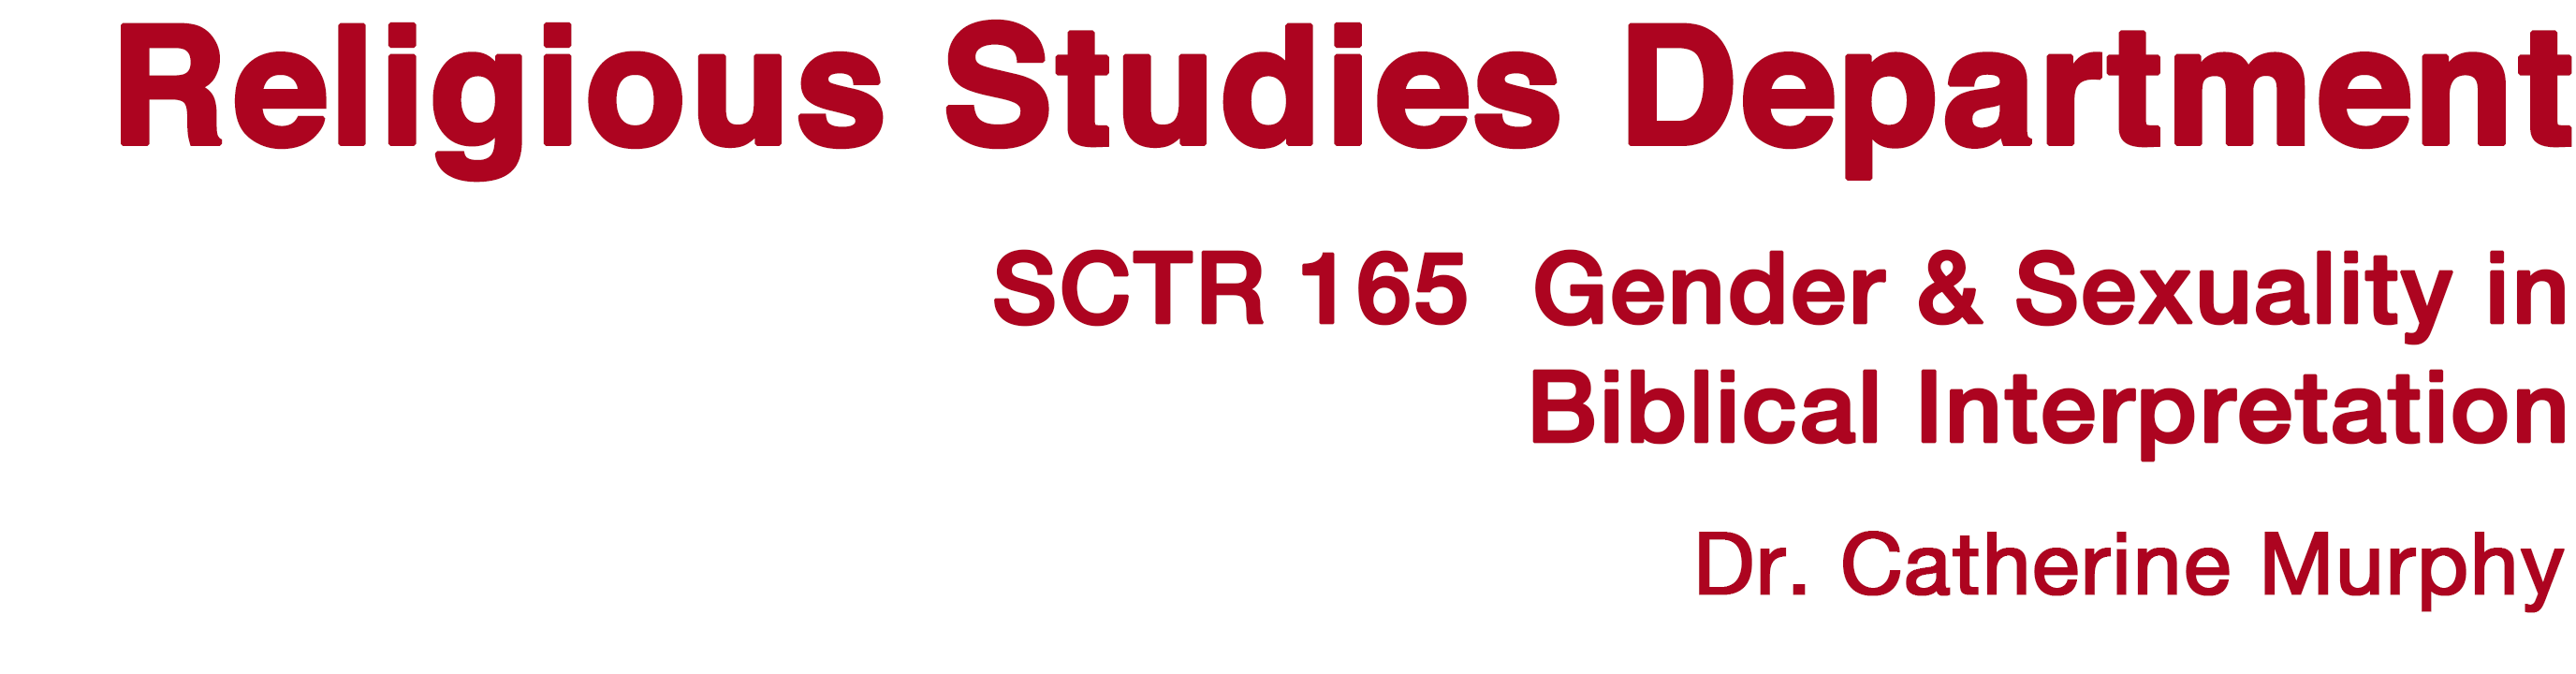 Religious Studies Department, SCU